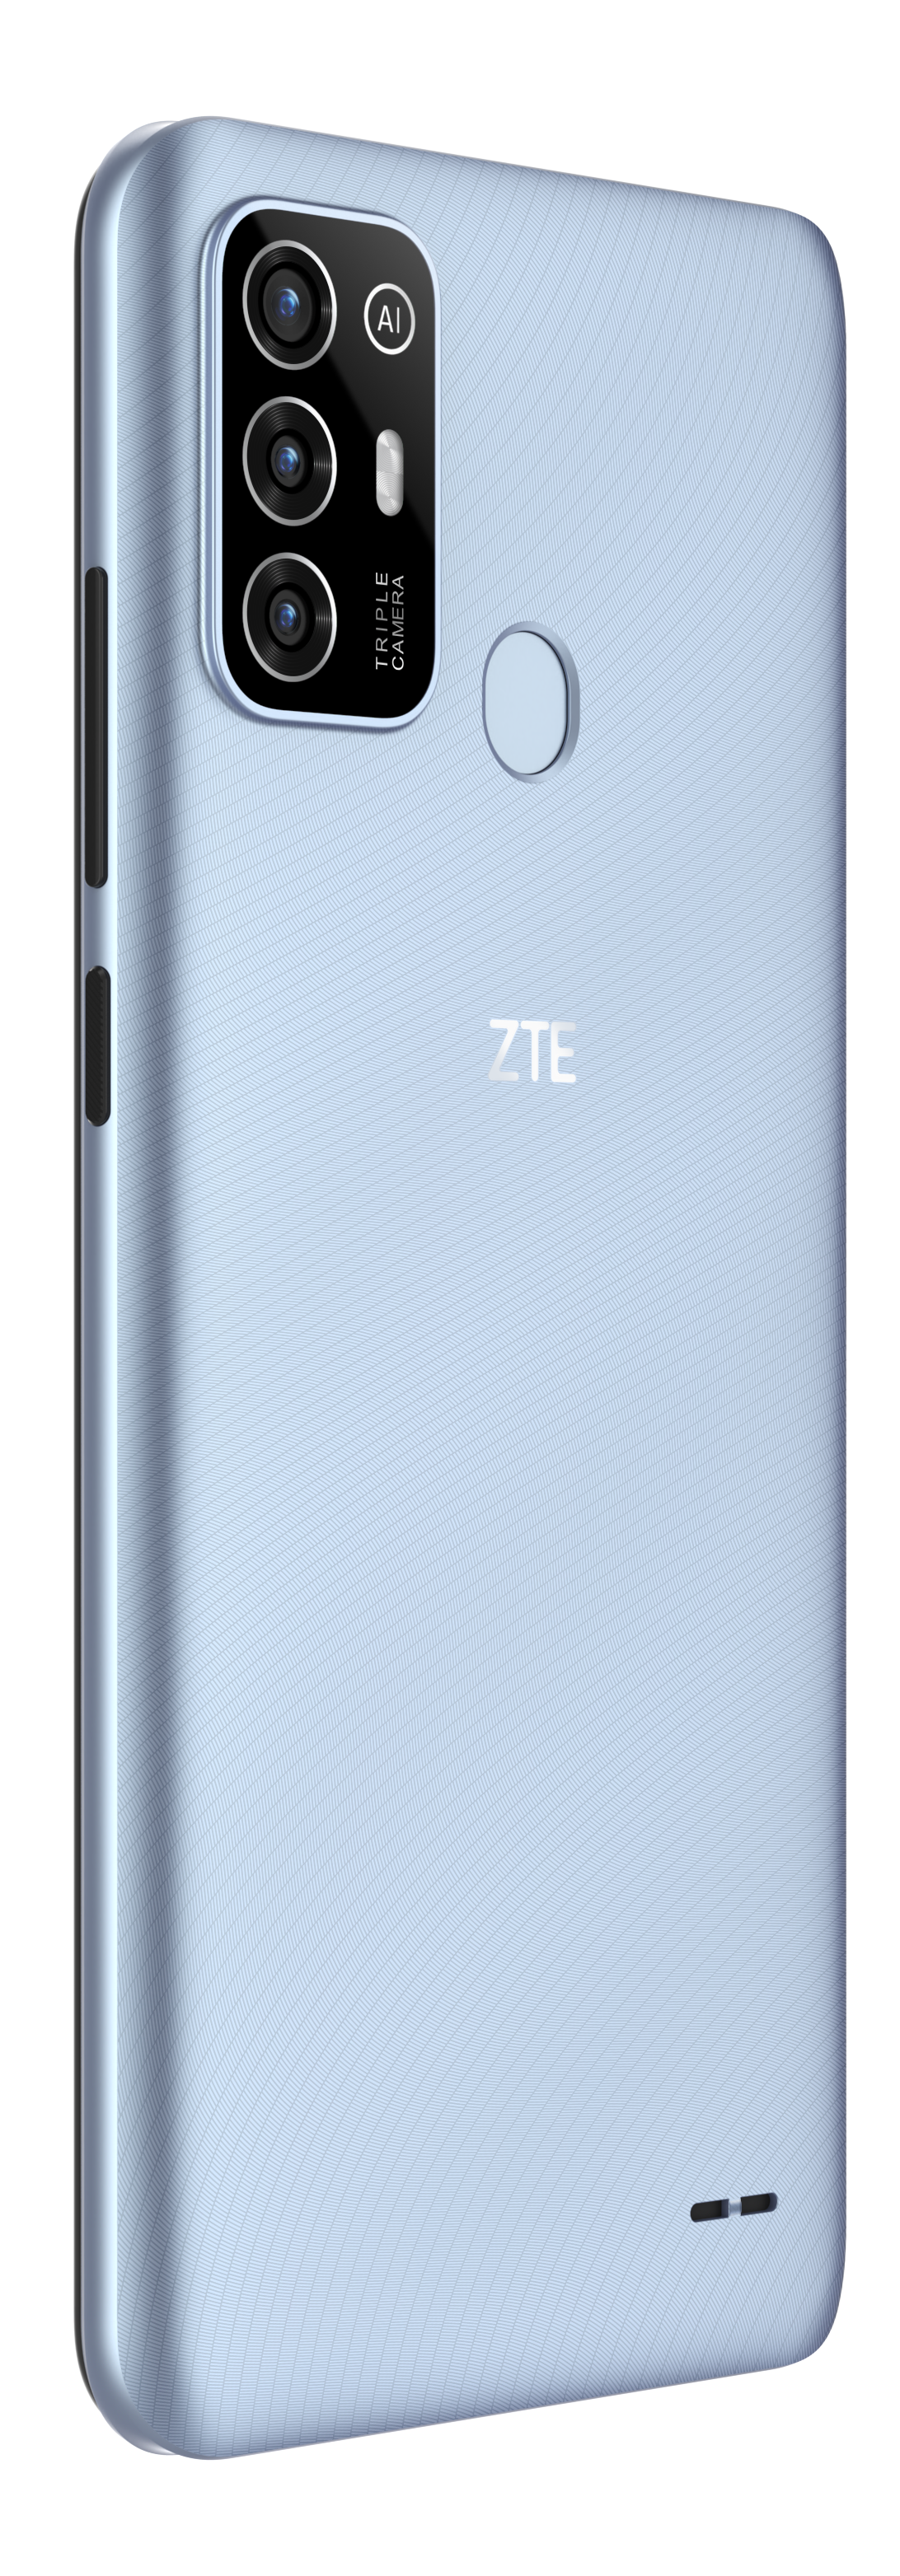 64 Blue Blade ZTE SIM Dual Crystal GB A52